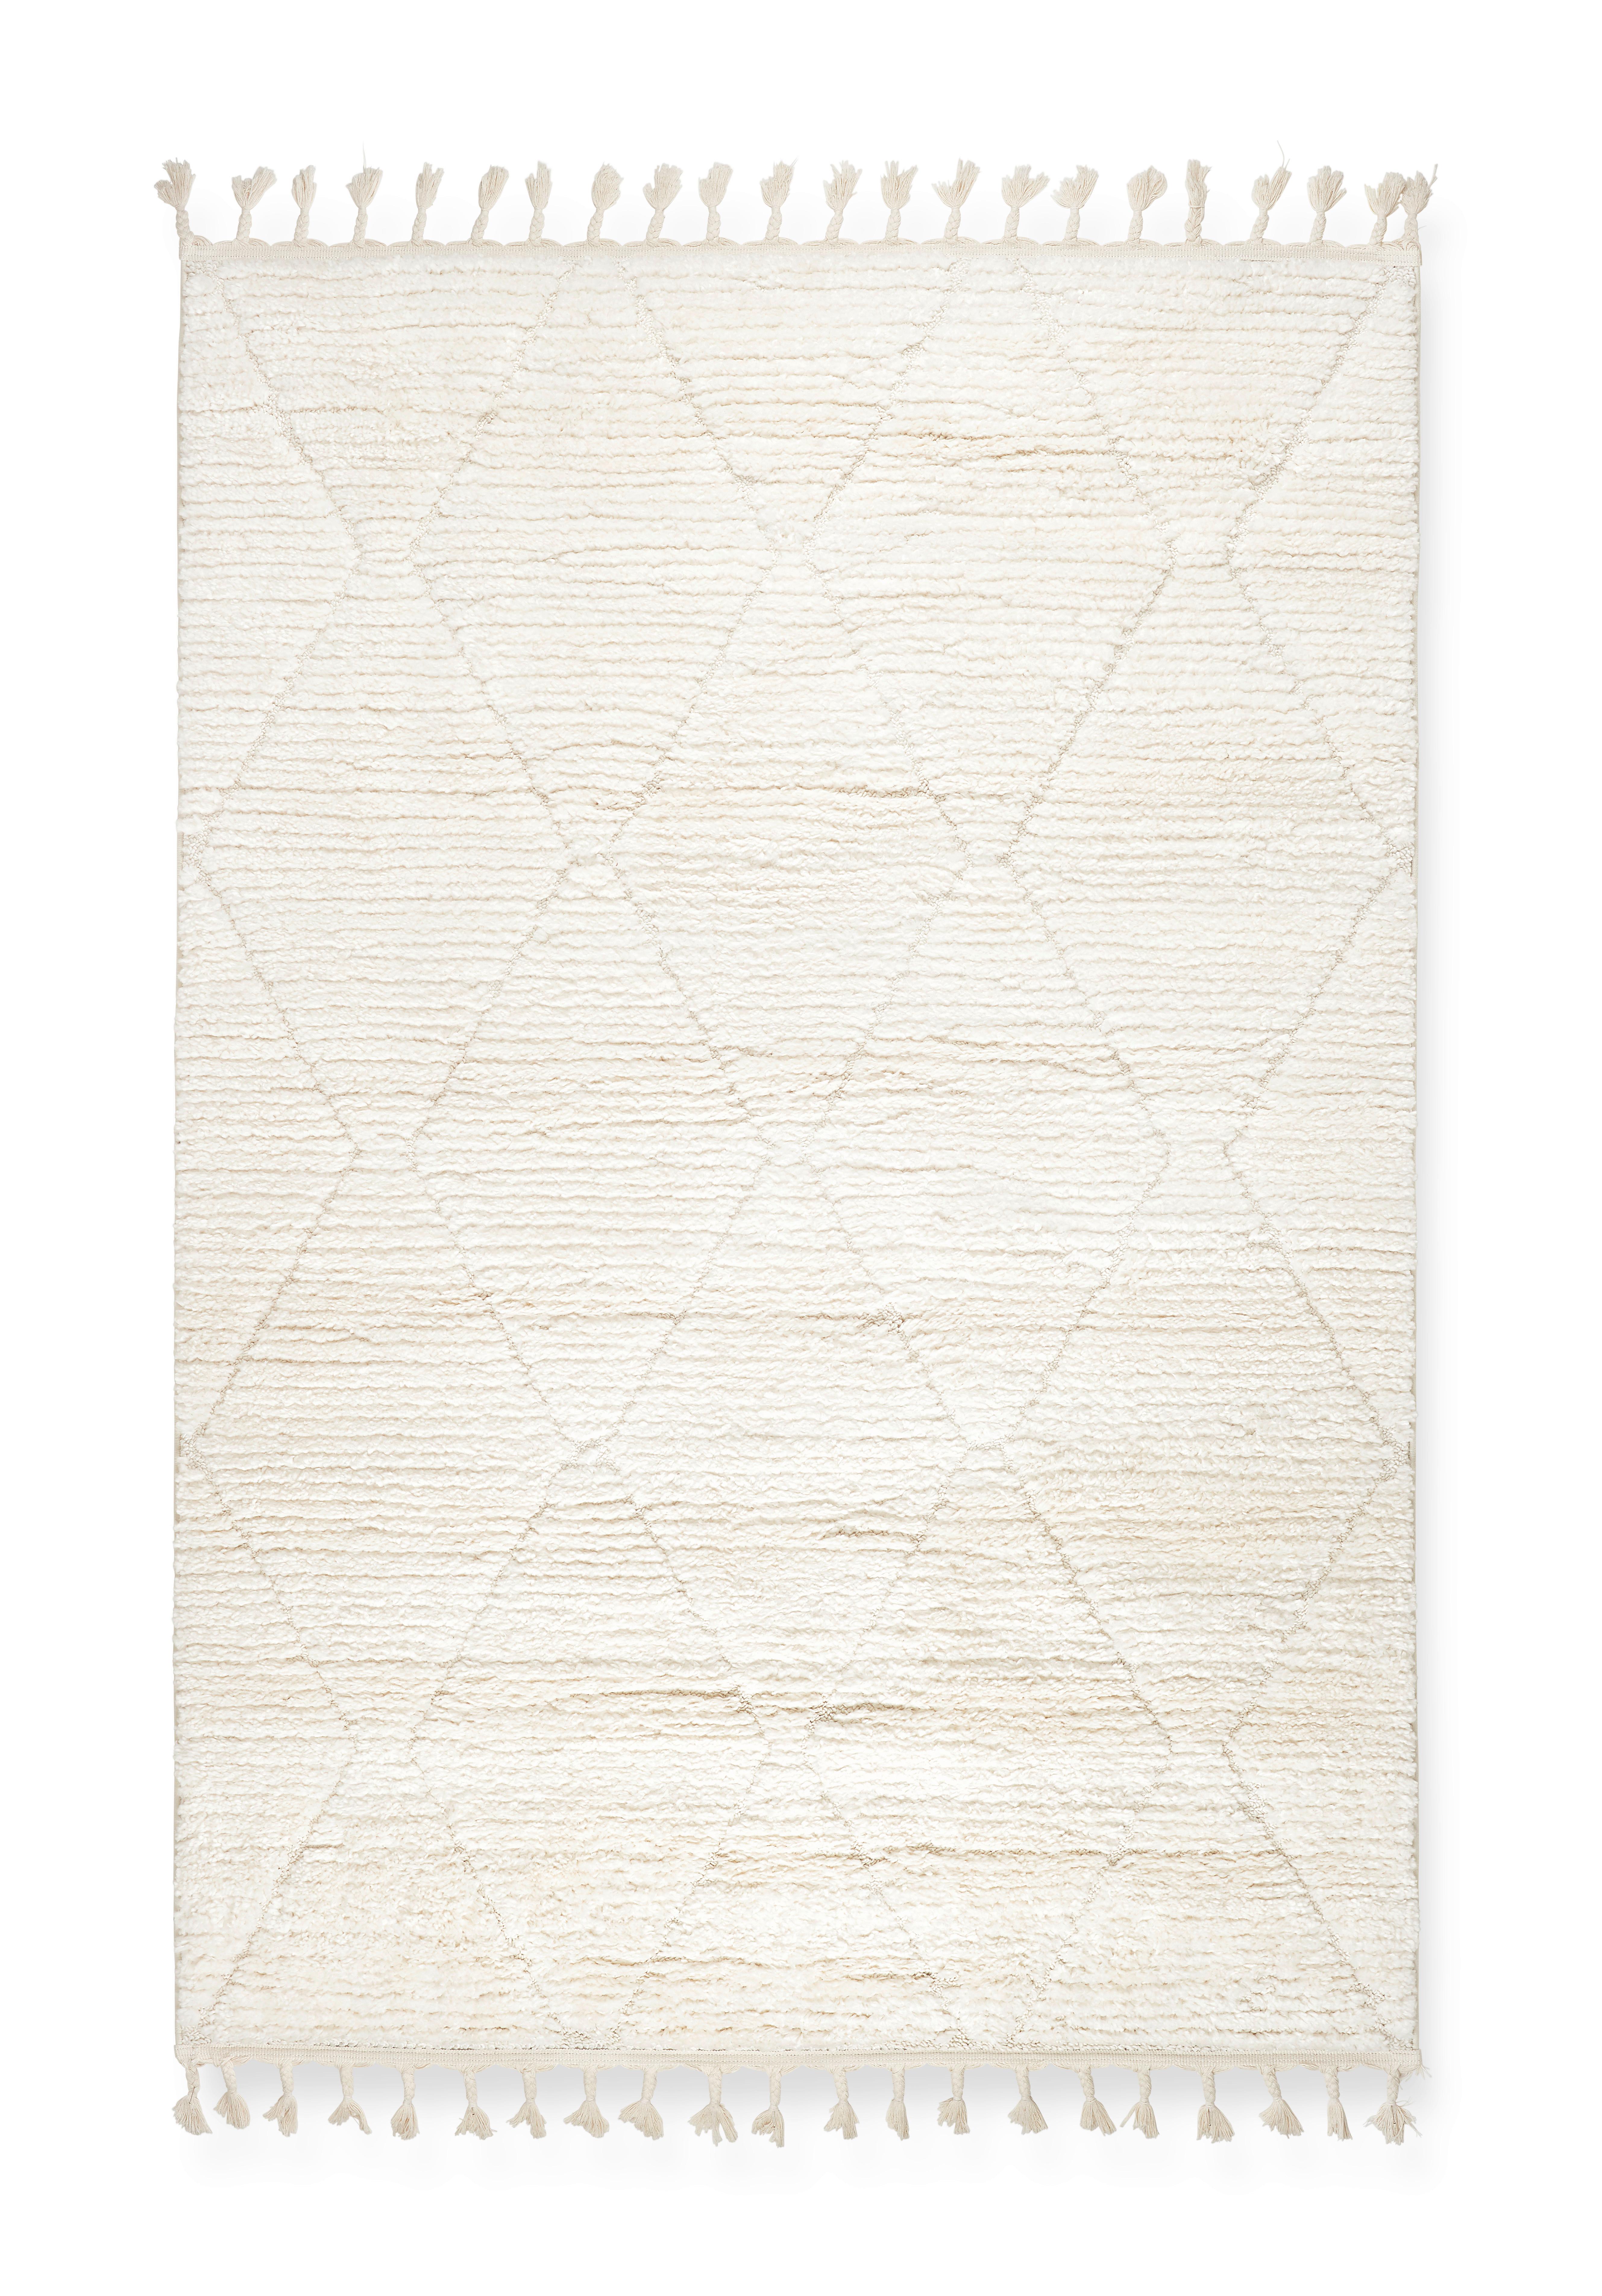 Webteppich Selma ca. 160x230cm - weiss, Basics, Textil (160/230cm) - Modern Living